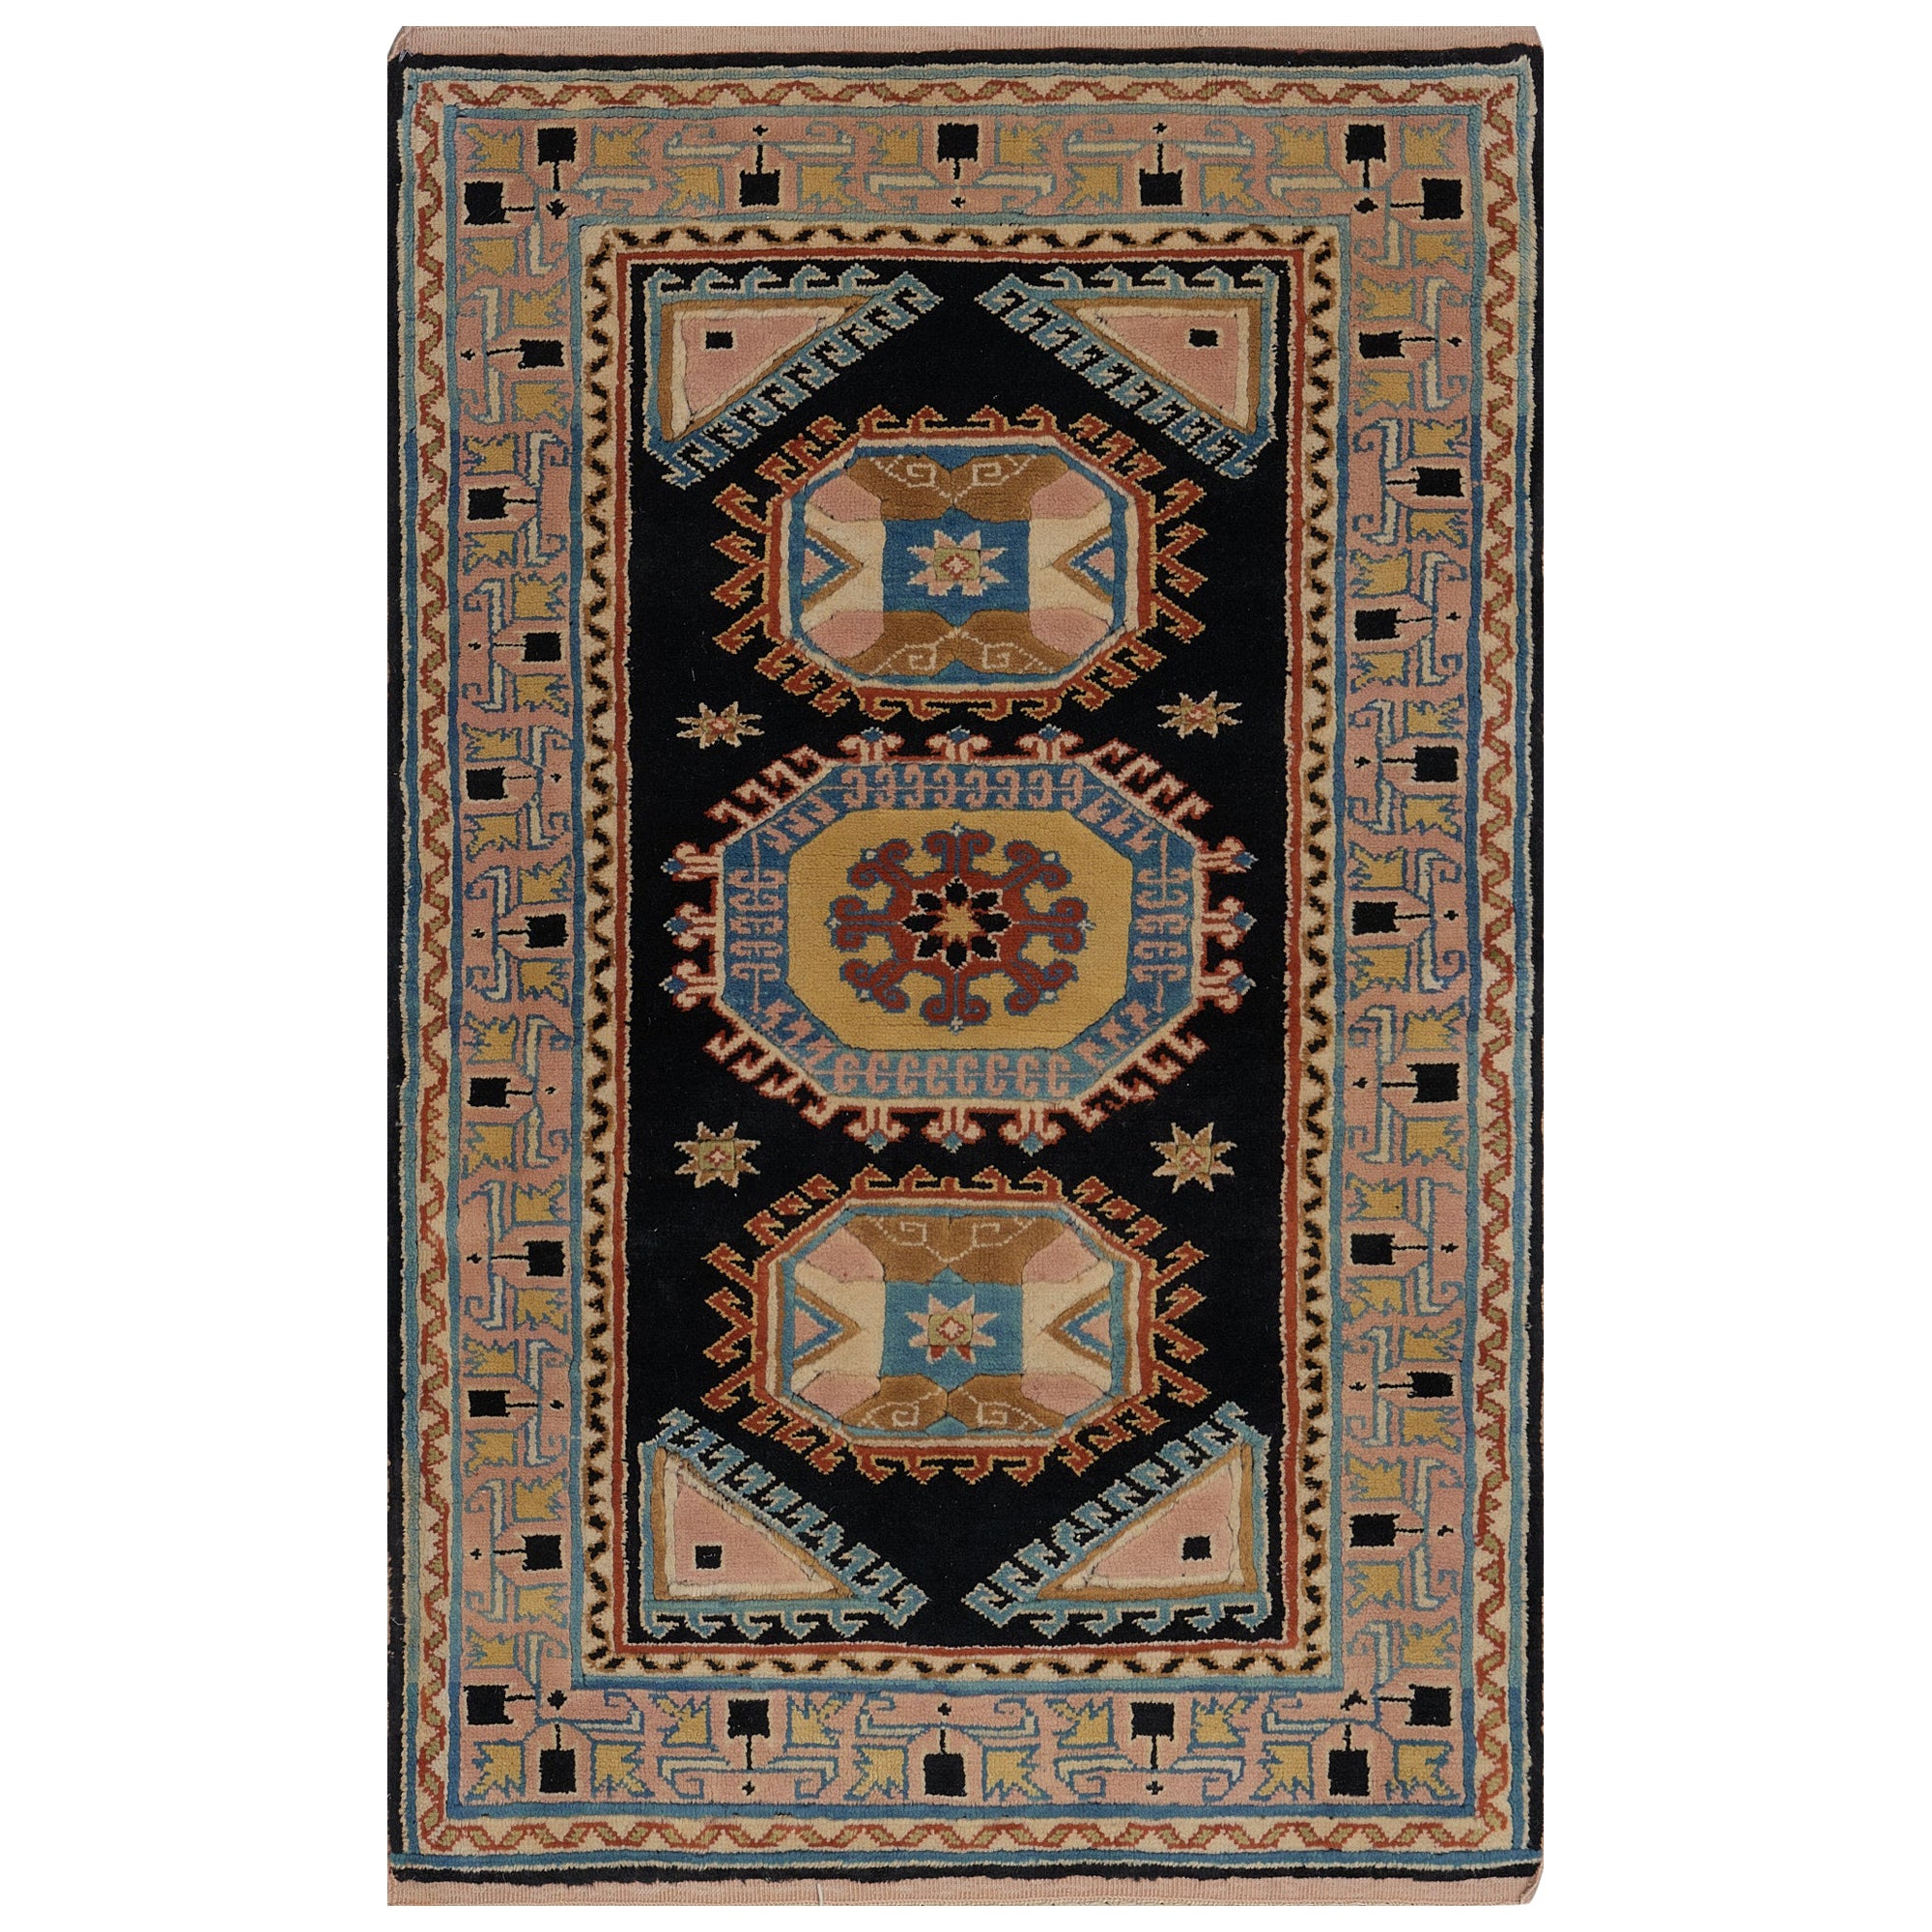 Traditioneller handgeknüpfter türkischer Teppich aus Wolle